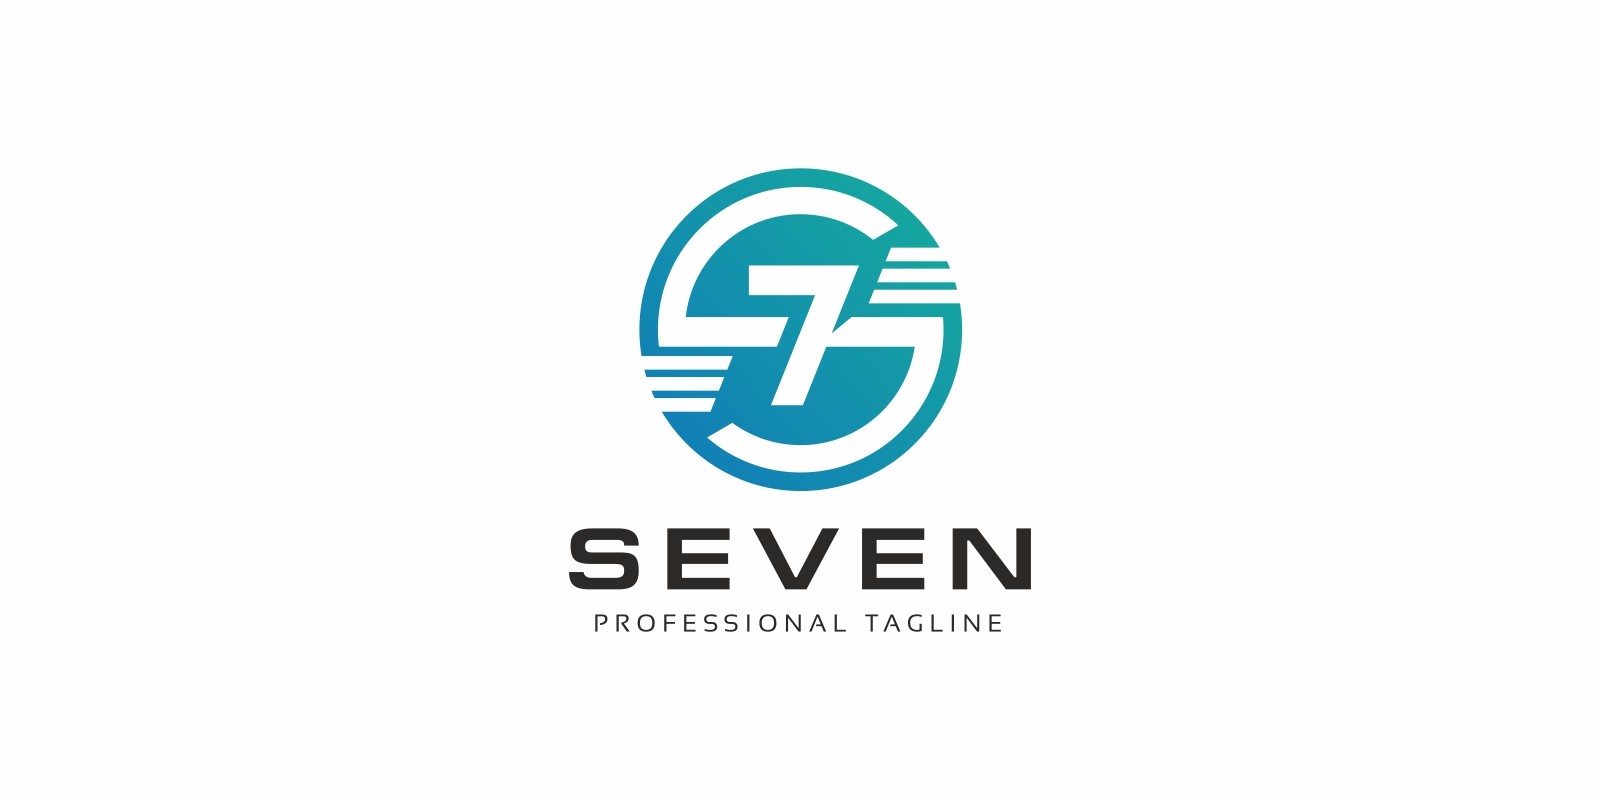 Севен ли. Логотип 7. J.Seven логотип. Семерка логотип. 7 Eleven логотип.